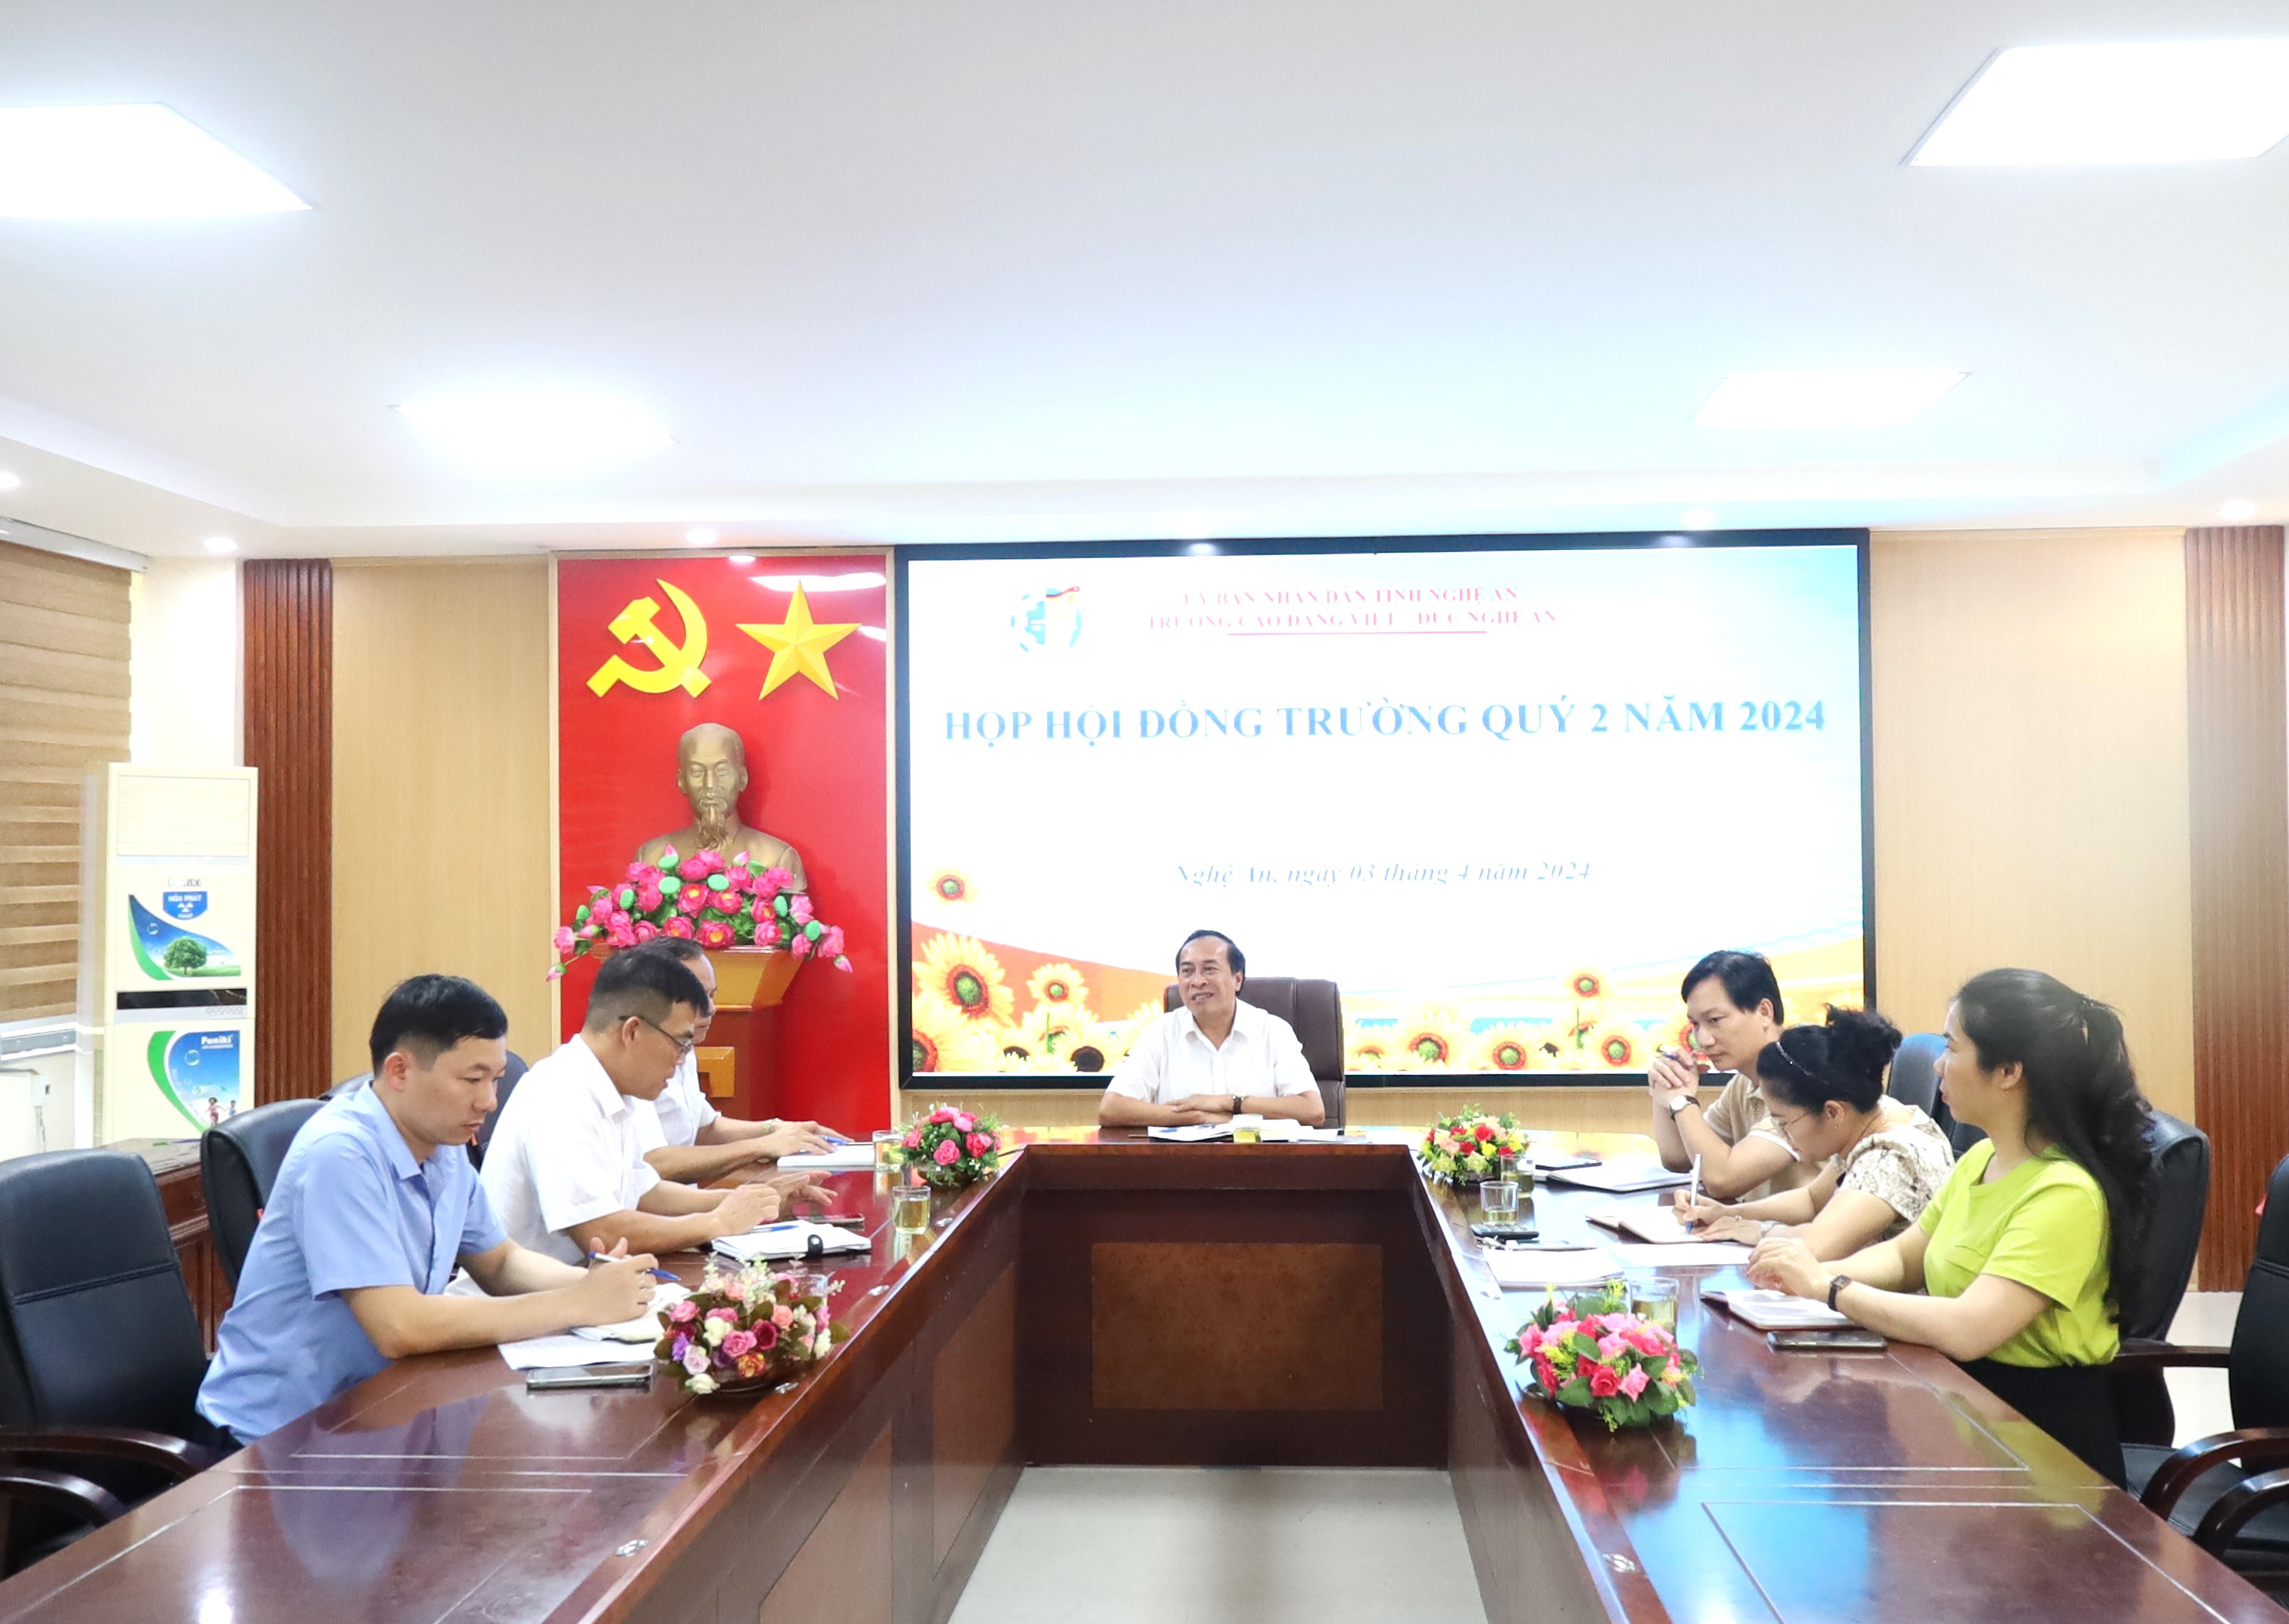 Hội đồng trường Trường Cao đẳng Việt – Đức Nghệ An tổ chức thành công Hội nghị Quý 02 năm 2024